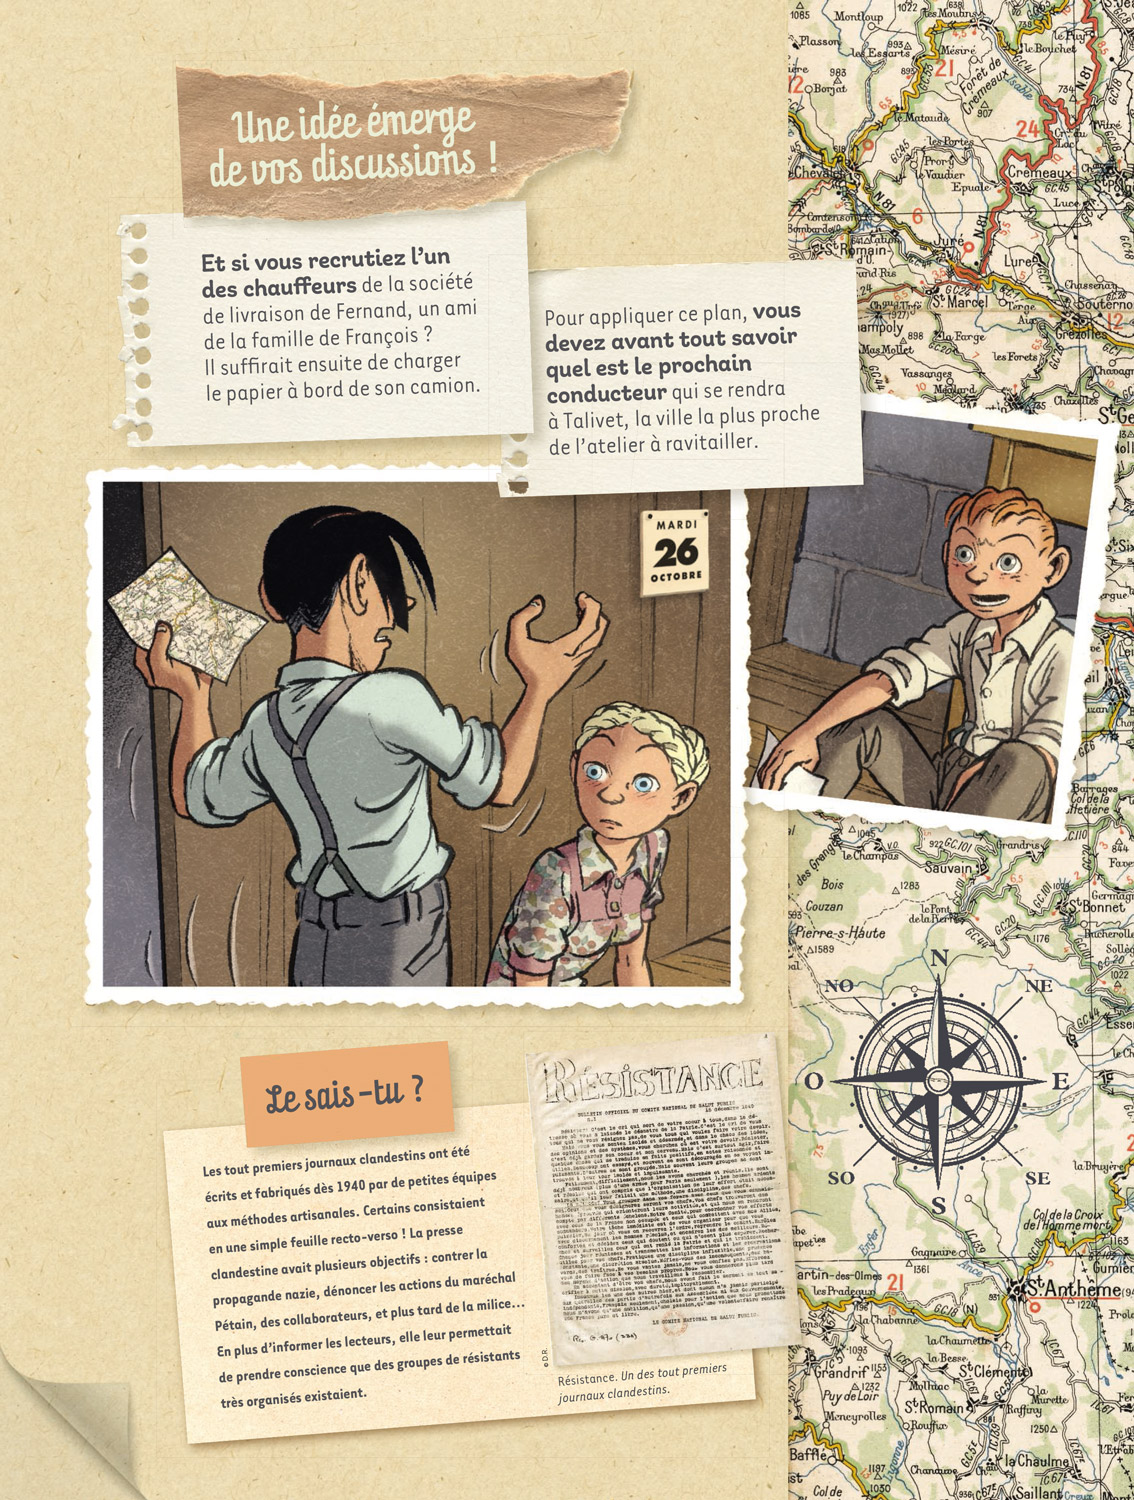 L'Escape Game - Les Enfants de la Résistance, Tome 2 : Le Ravitaillement  clandestin — Éditions Le Lombard